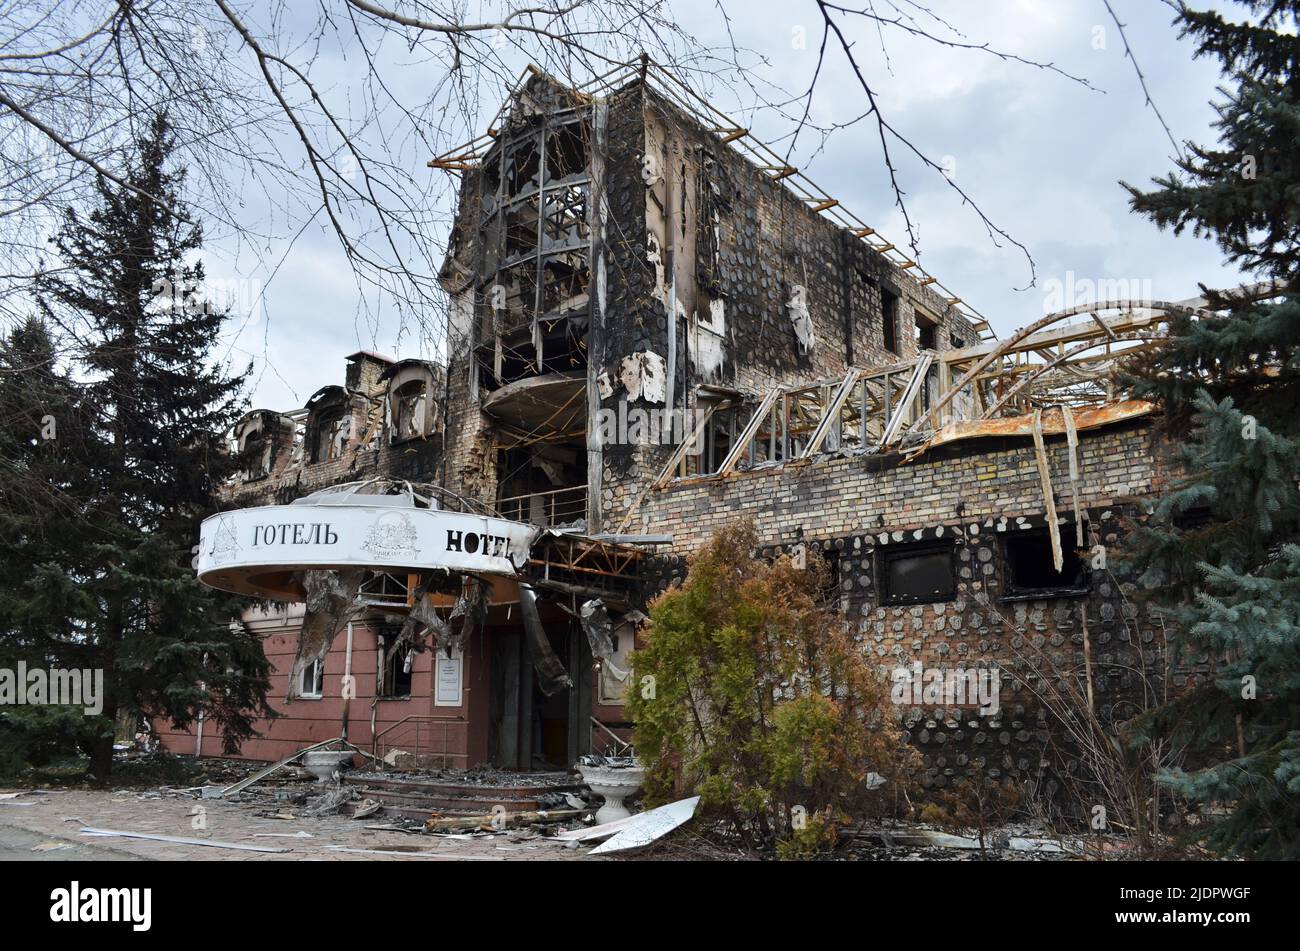 Mriya, Region Kiew, Ukraine - 11. April 2022: Zerstörtes Hotel Babushkin Sad in der Nähe der Autobahn Zhytomyr, Region Kiew während der russischen Invasion in der Ukraine. Stockfoto